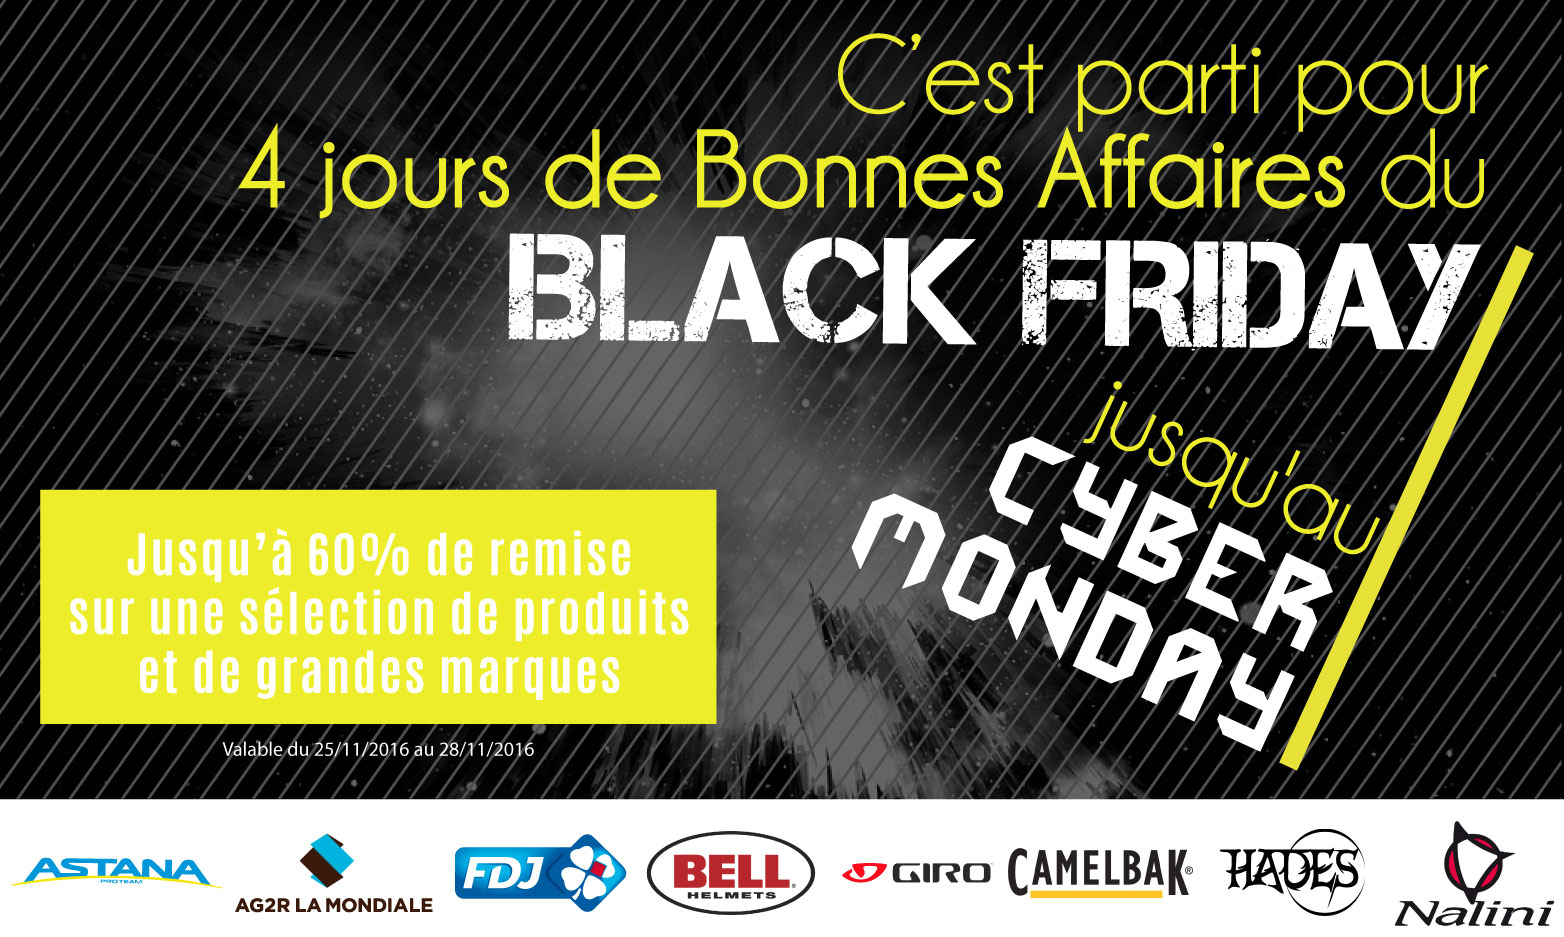 Black Friday...Cyber Monday : 4 jours de promotions sur Alibabike.com